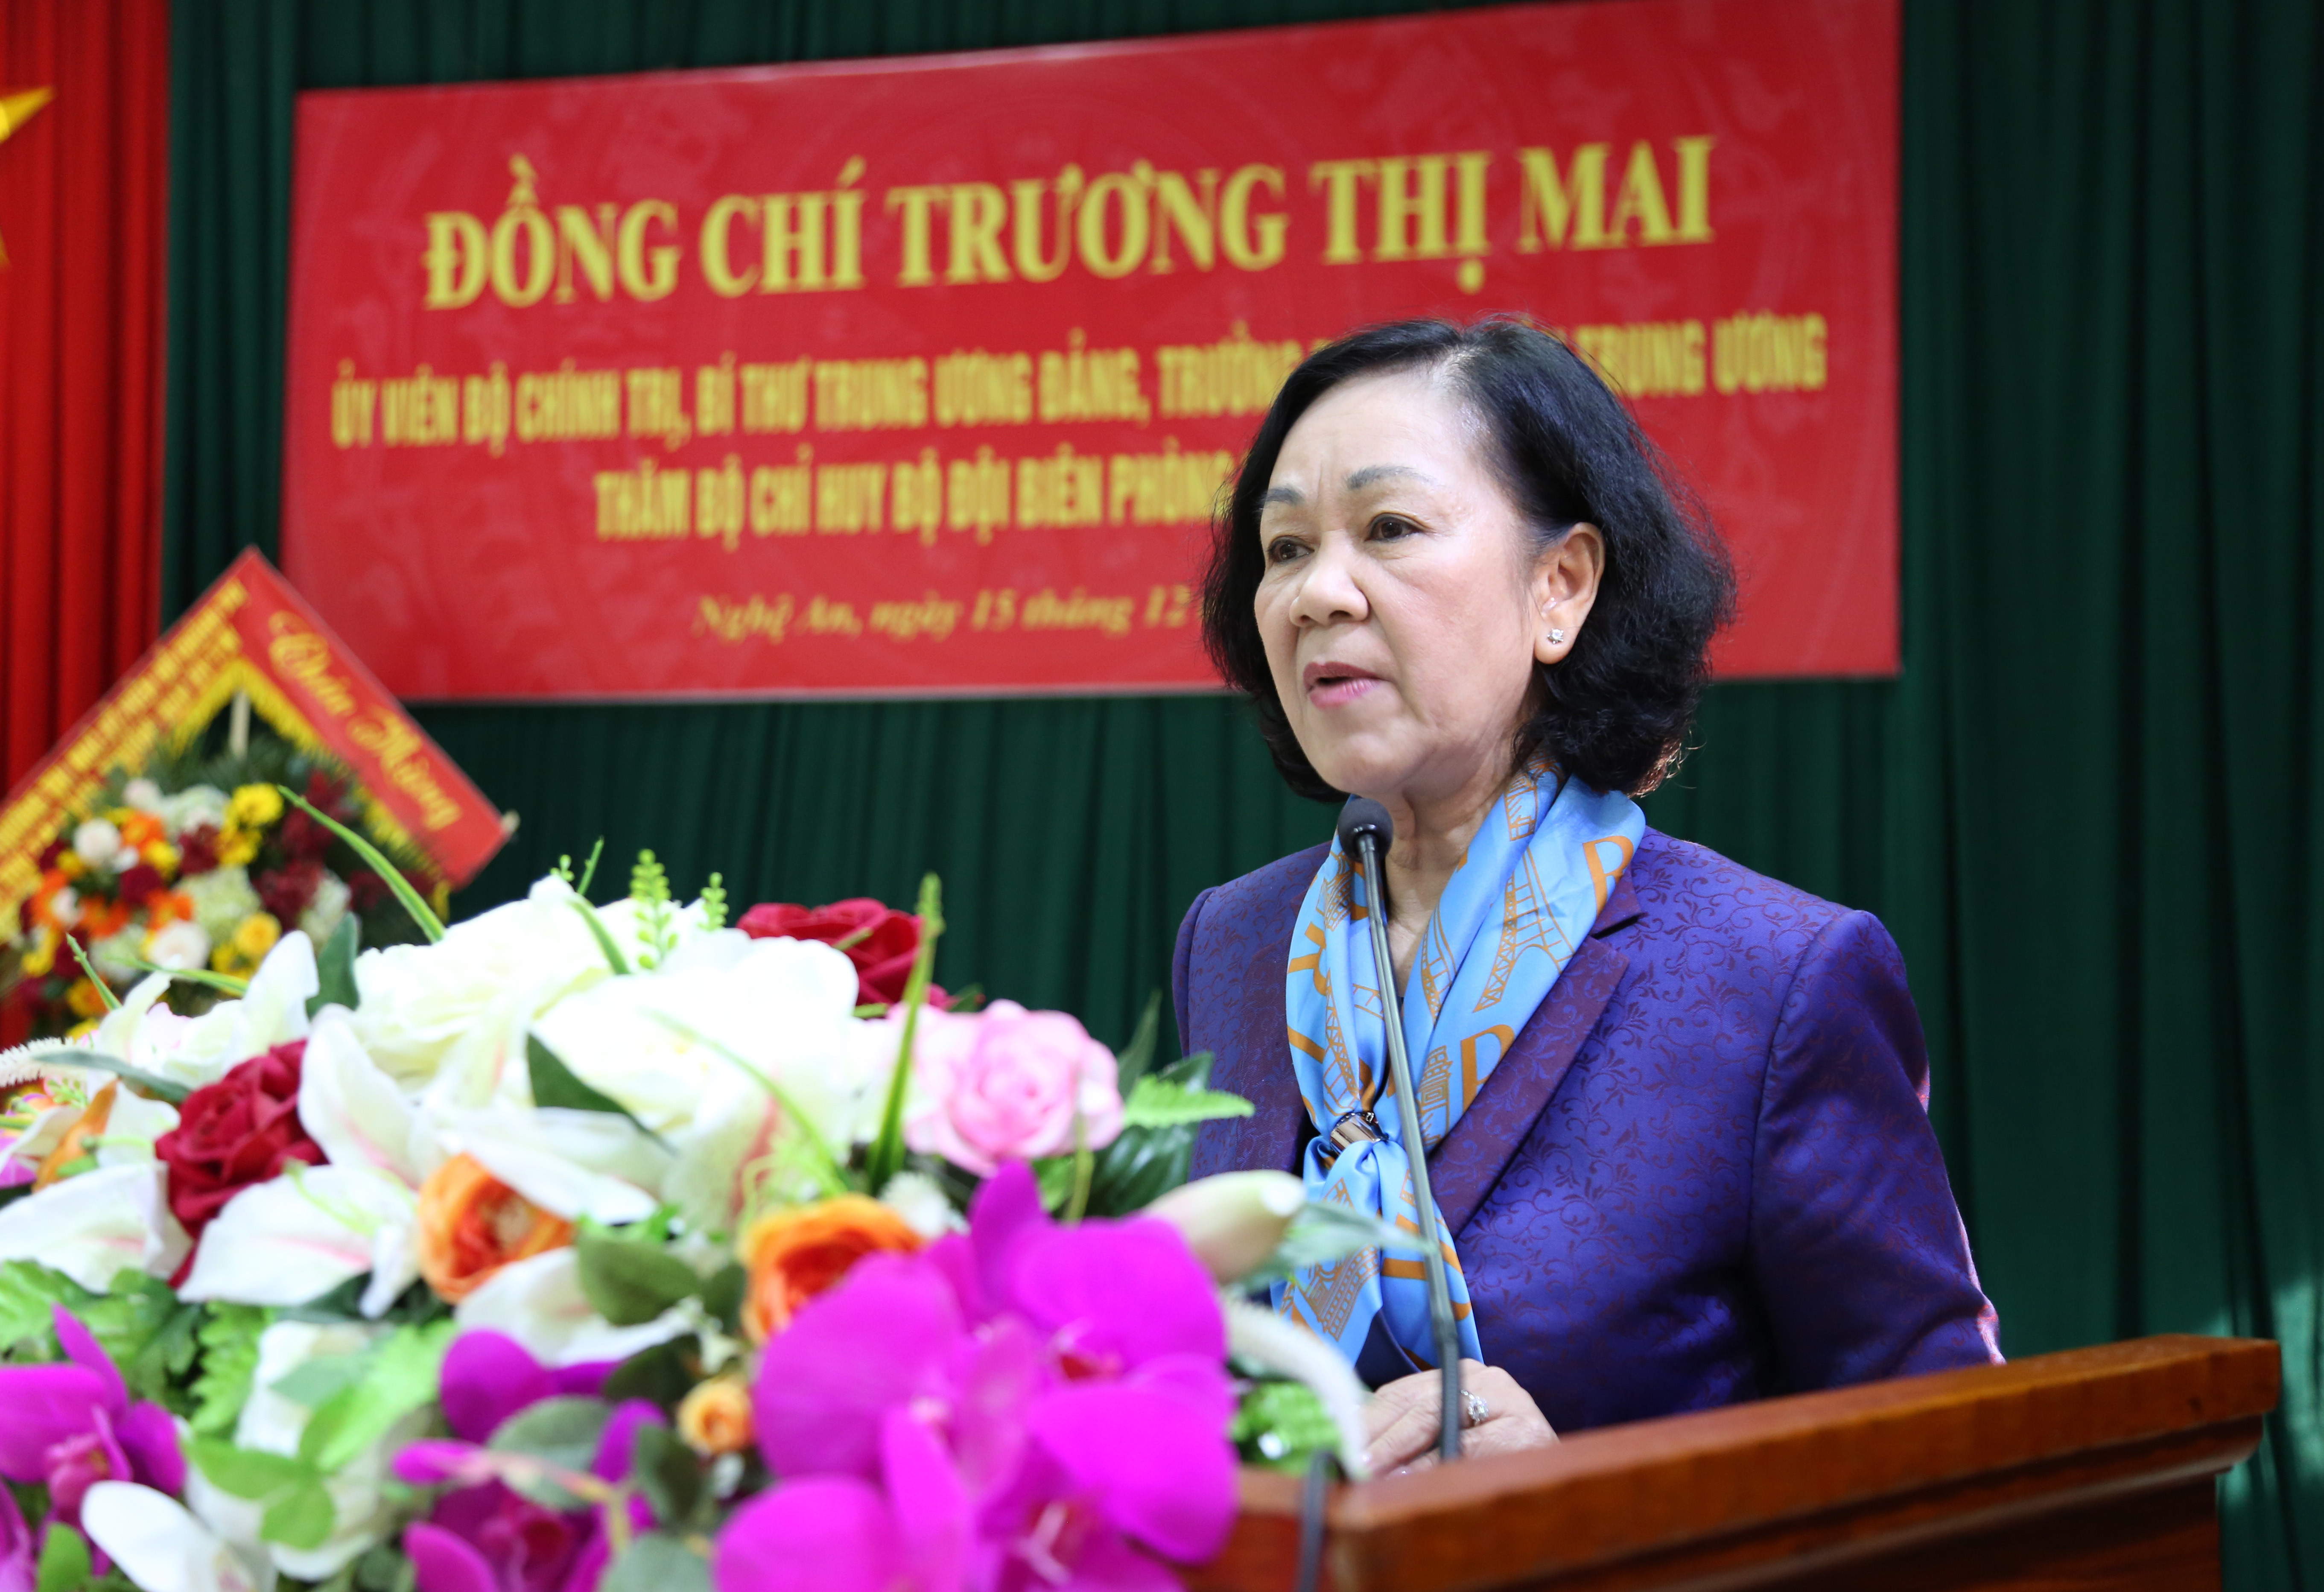 Đồng chí Trương Thị Mai ghi nhận và đánh giá cao những nỗ lực của BĐBP tỉnh Nghệ An thời gian qua. Ảnh: Đào Tuấn 